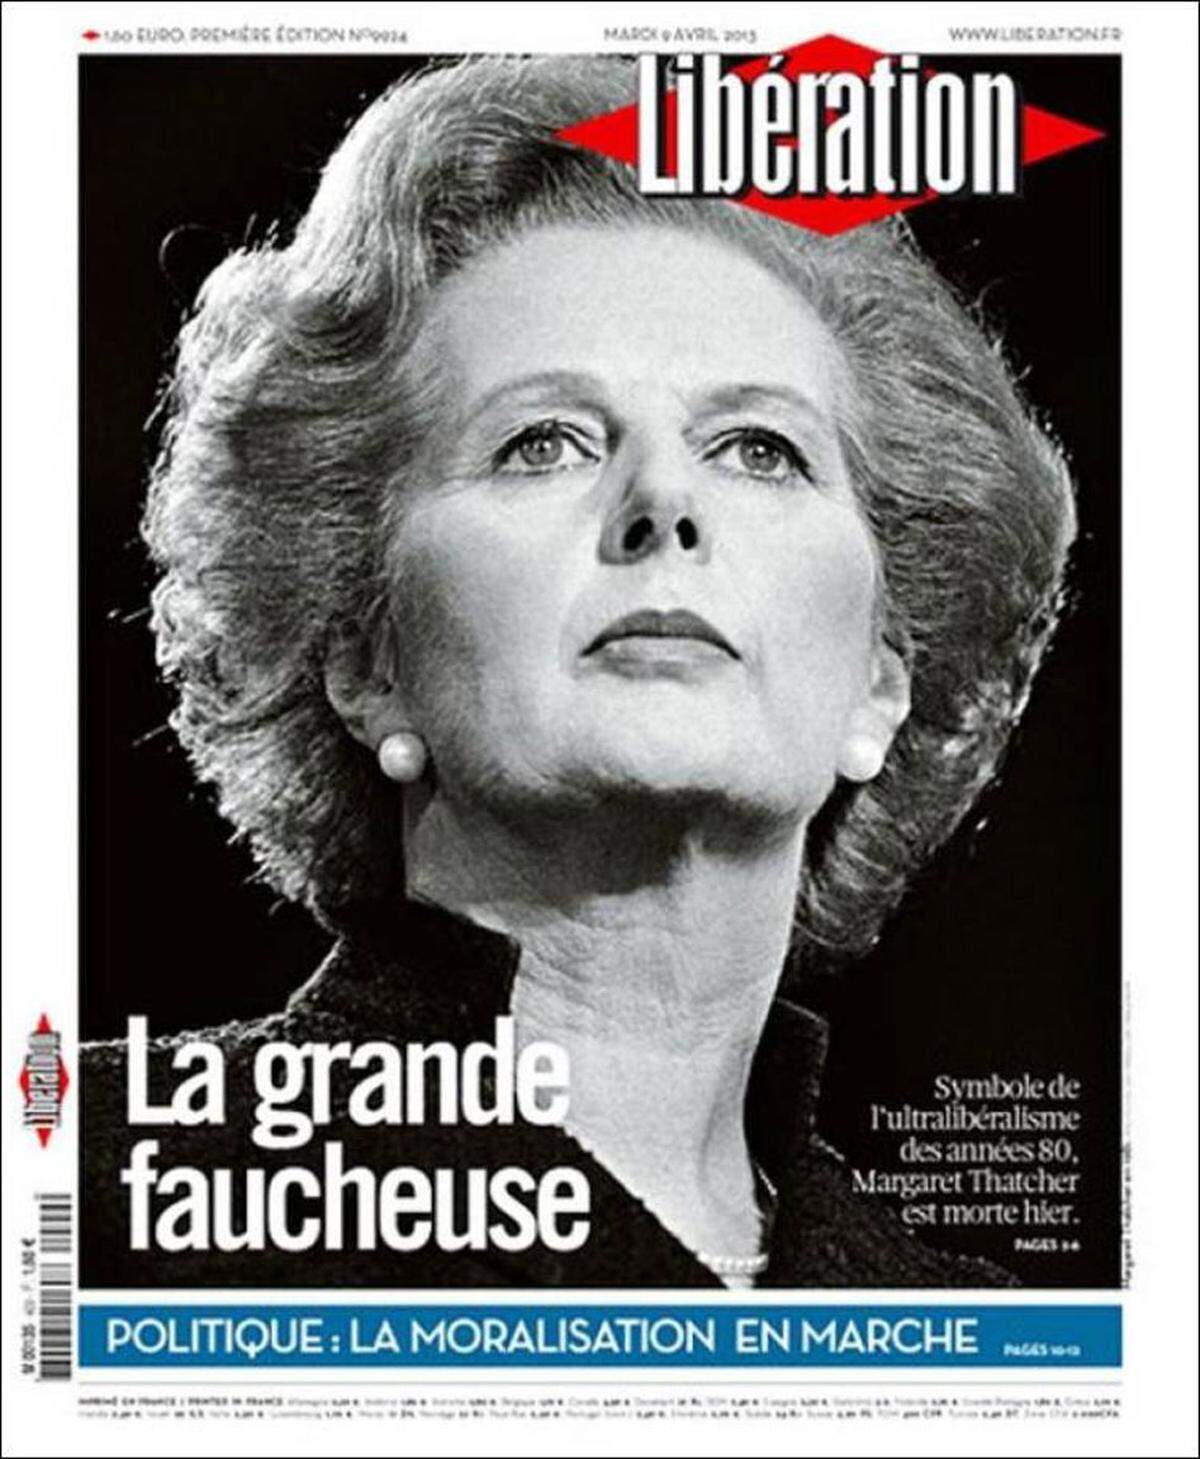  "Libération" (Paris): "Mit ihren Ideen, die so starr waren wie ihre Dauerwelle, hat Thatcher eine Ideologie erfunden: Den Thatcherismus, der trotz seiner erwiesenen Misserfolge noch immer blüht. Als britische Premierministerin über elf Jahre verkörperte sie den triumphierenden Liberalismus der 80er Jahre. Einige einfache Ideen, die sie wie ein neues Evangelium zu verkaufen verstand: Ein Lobgesang auf Privatisierungen, auf die Deregulierung vor allem des Finanzsektors, flexible Arbeitsgesetze und massive Angriffe auf Gewerkschaften. (...) In der Wirtschaftspolitik setzte sie ihre Vision von der Gesellschaft zunächst in ihrer Partei und in ihrem Land durch, um sie dann in der übrigen Welt zu verbreiten (...) Die aktuelle Krise ist auch die Krise des Thatcherismus, den seine Anhänger bis zum Äußersten trieben."